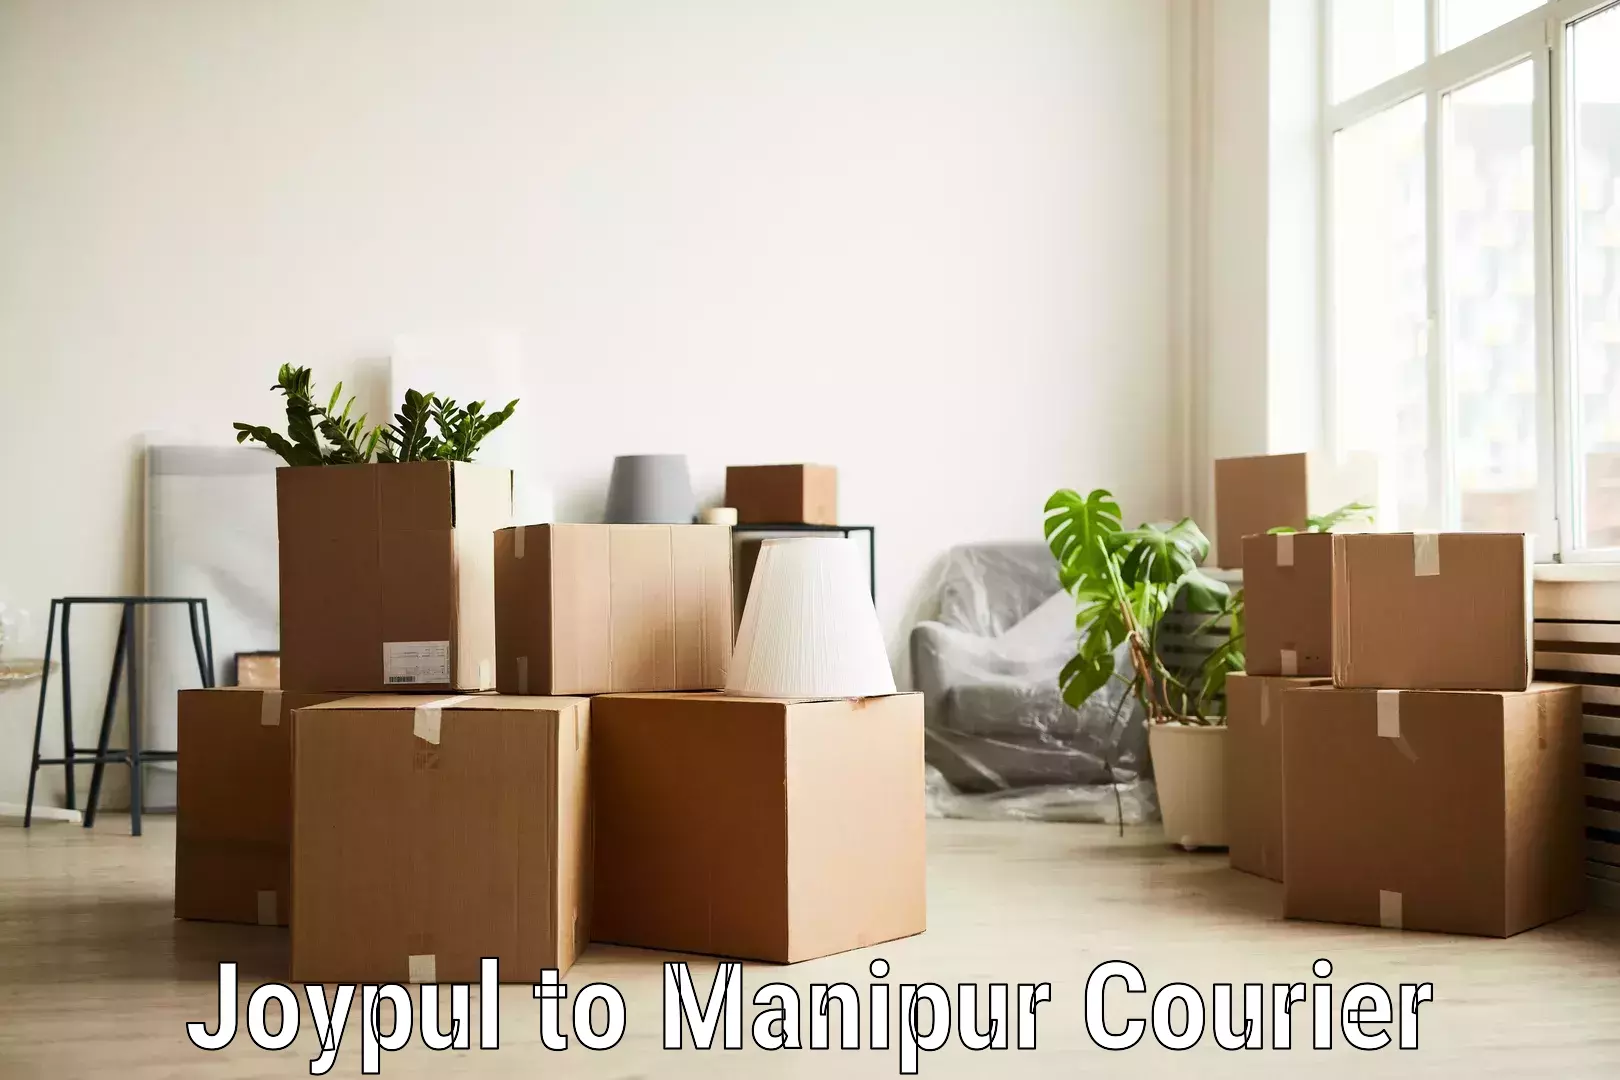 Reliable parcel services Joypul to Manipur